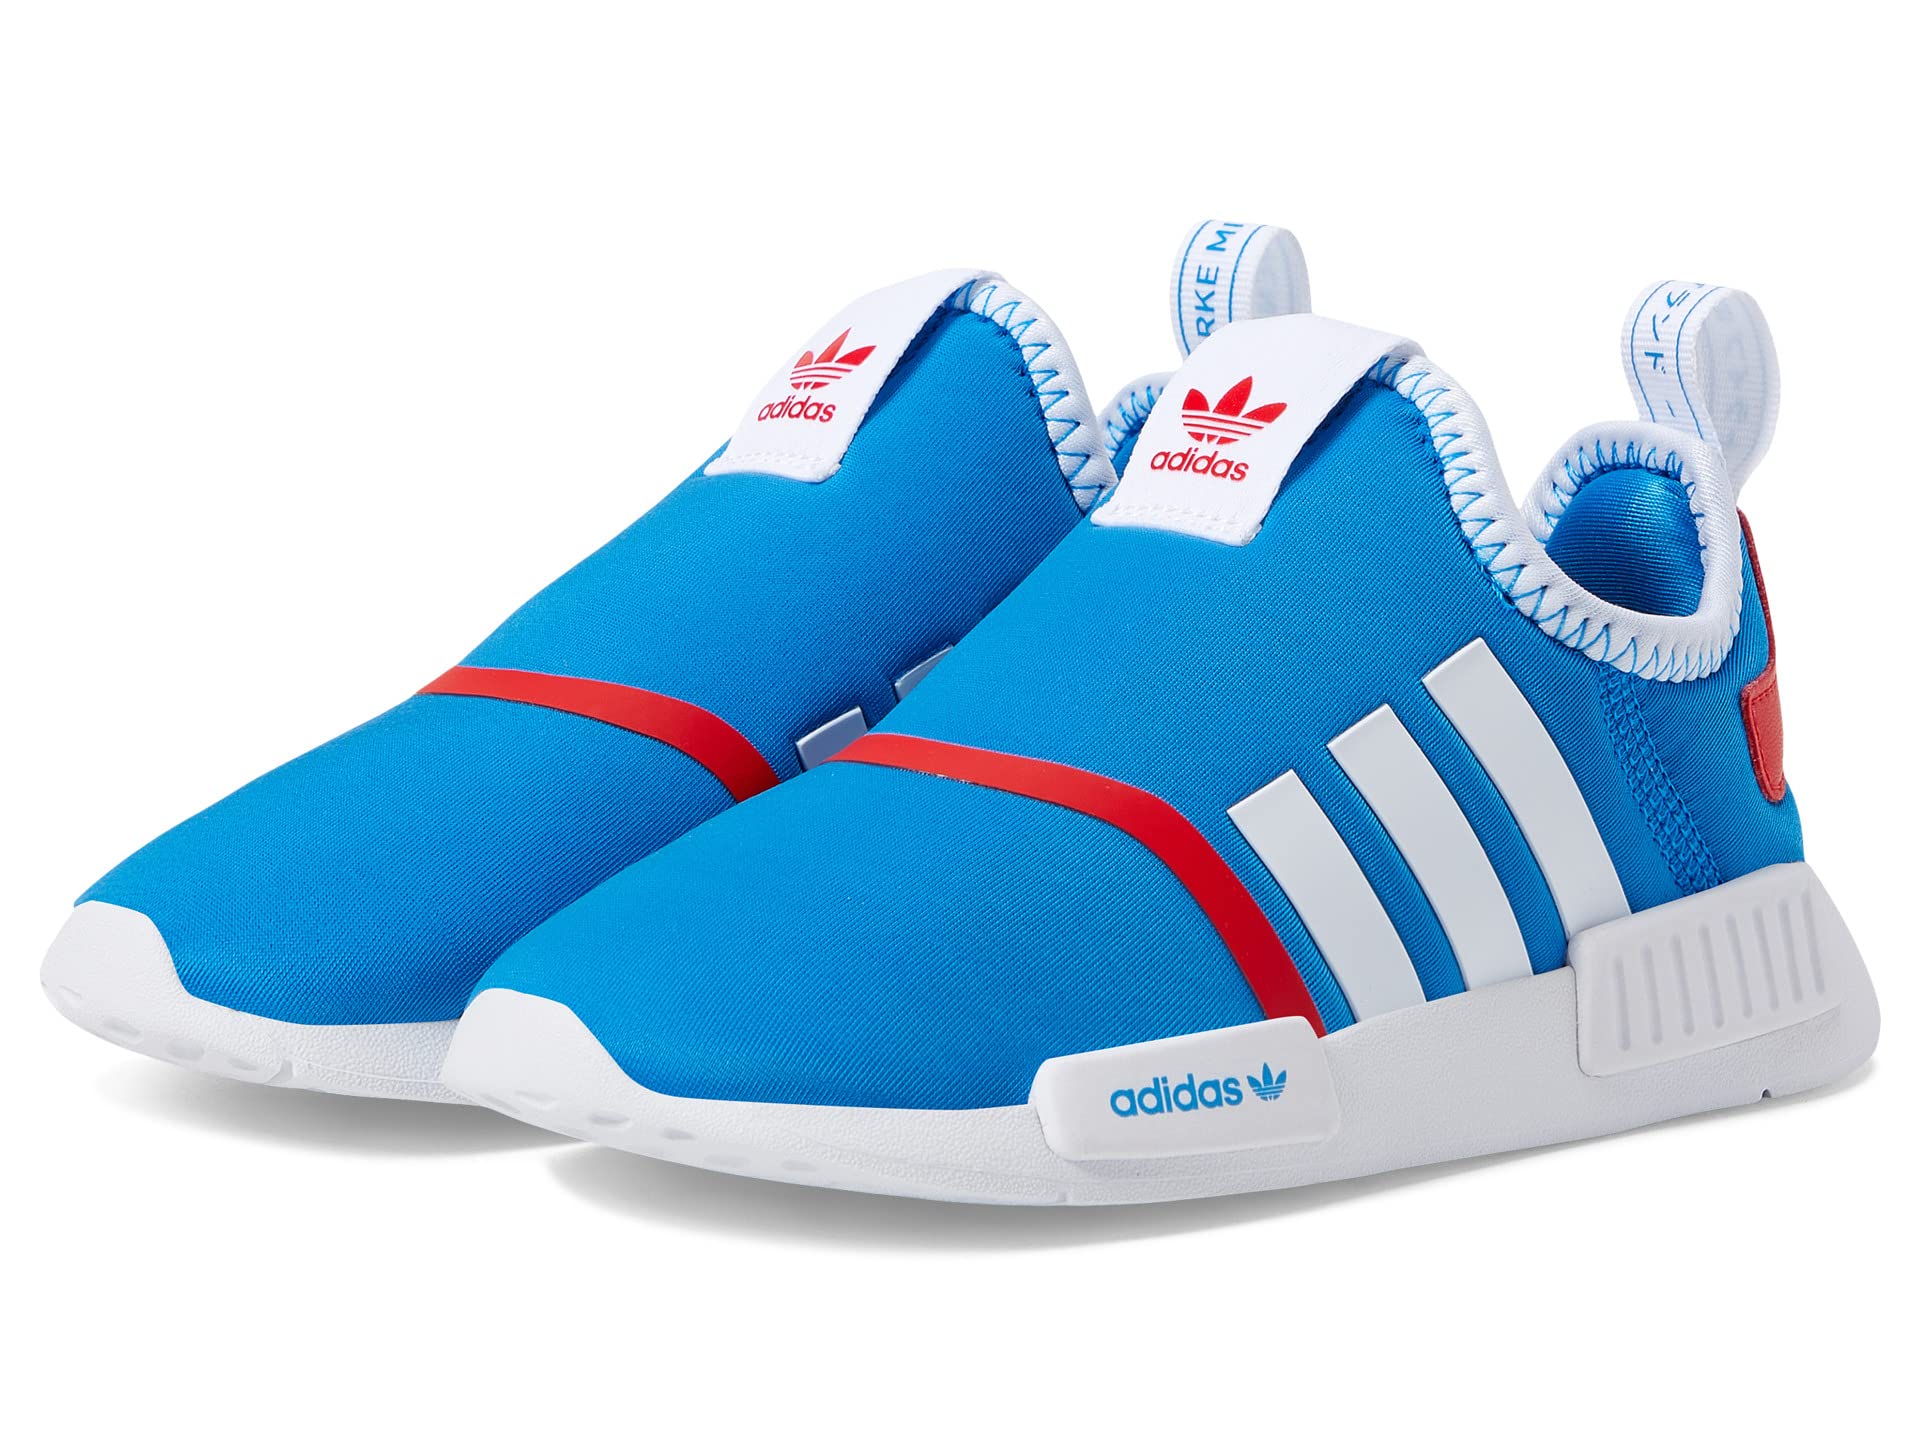 Детские кроссовки Adidas Originals NMD 360, голубой/красный шорты he2014 adidas g3ssho vivid red 152